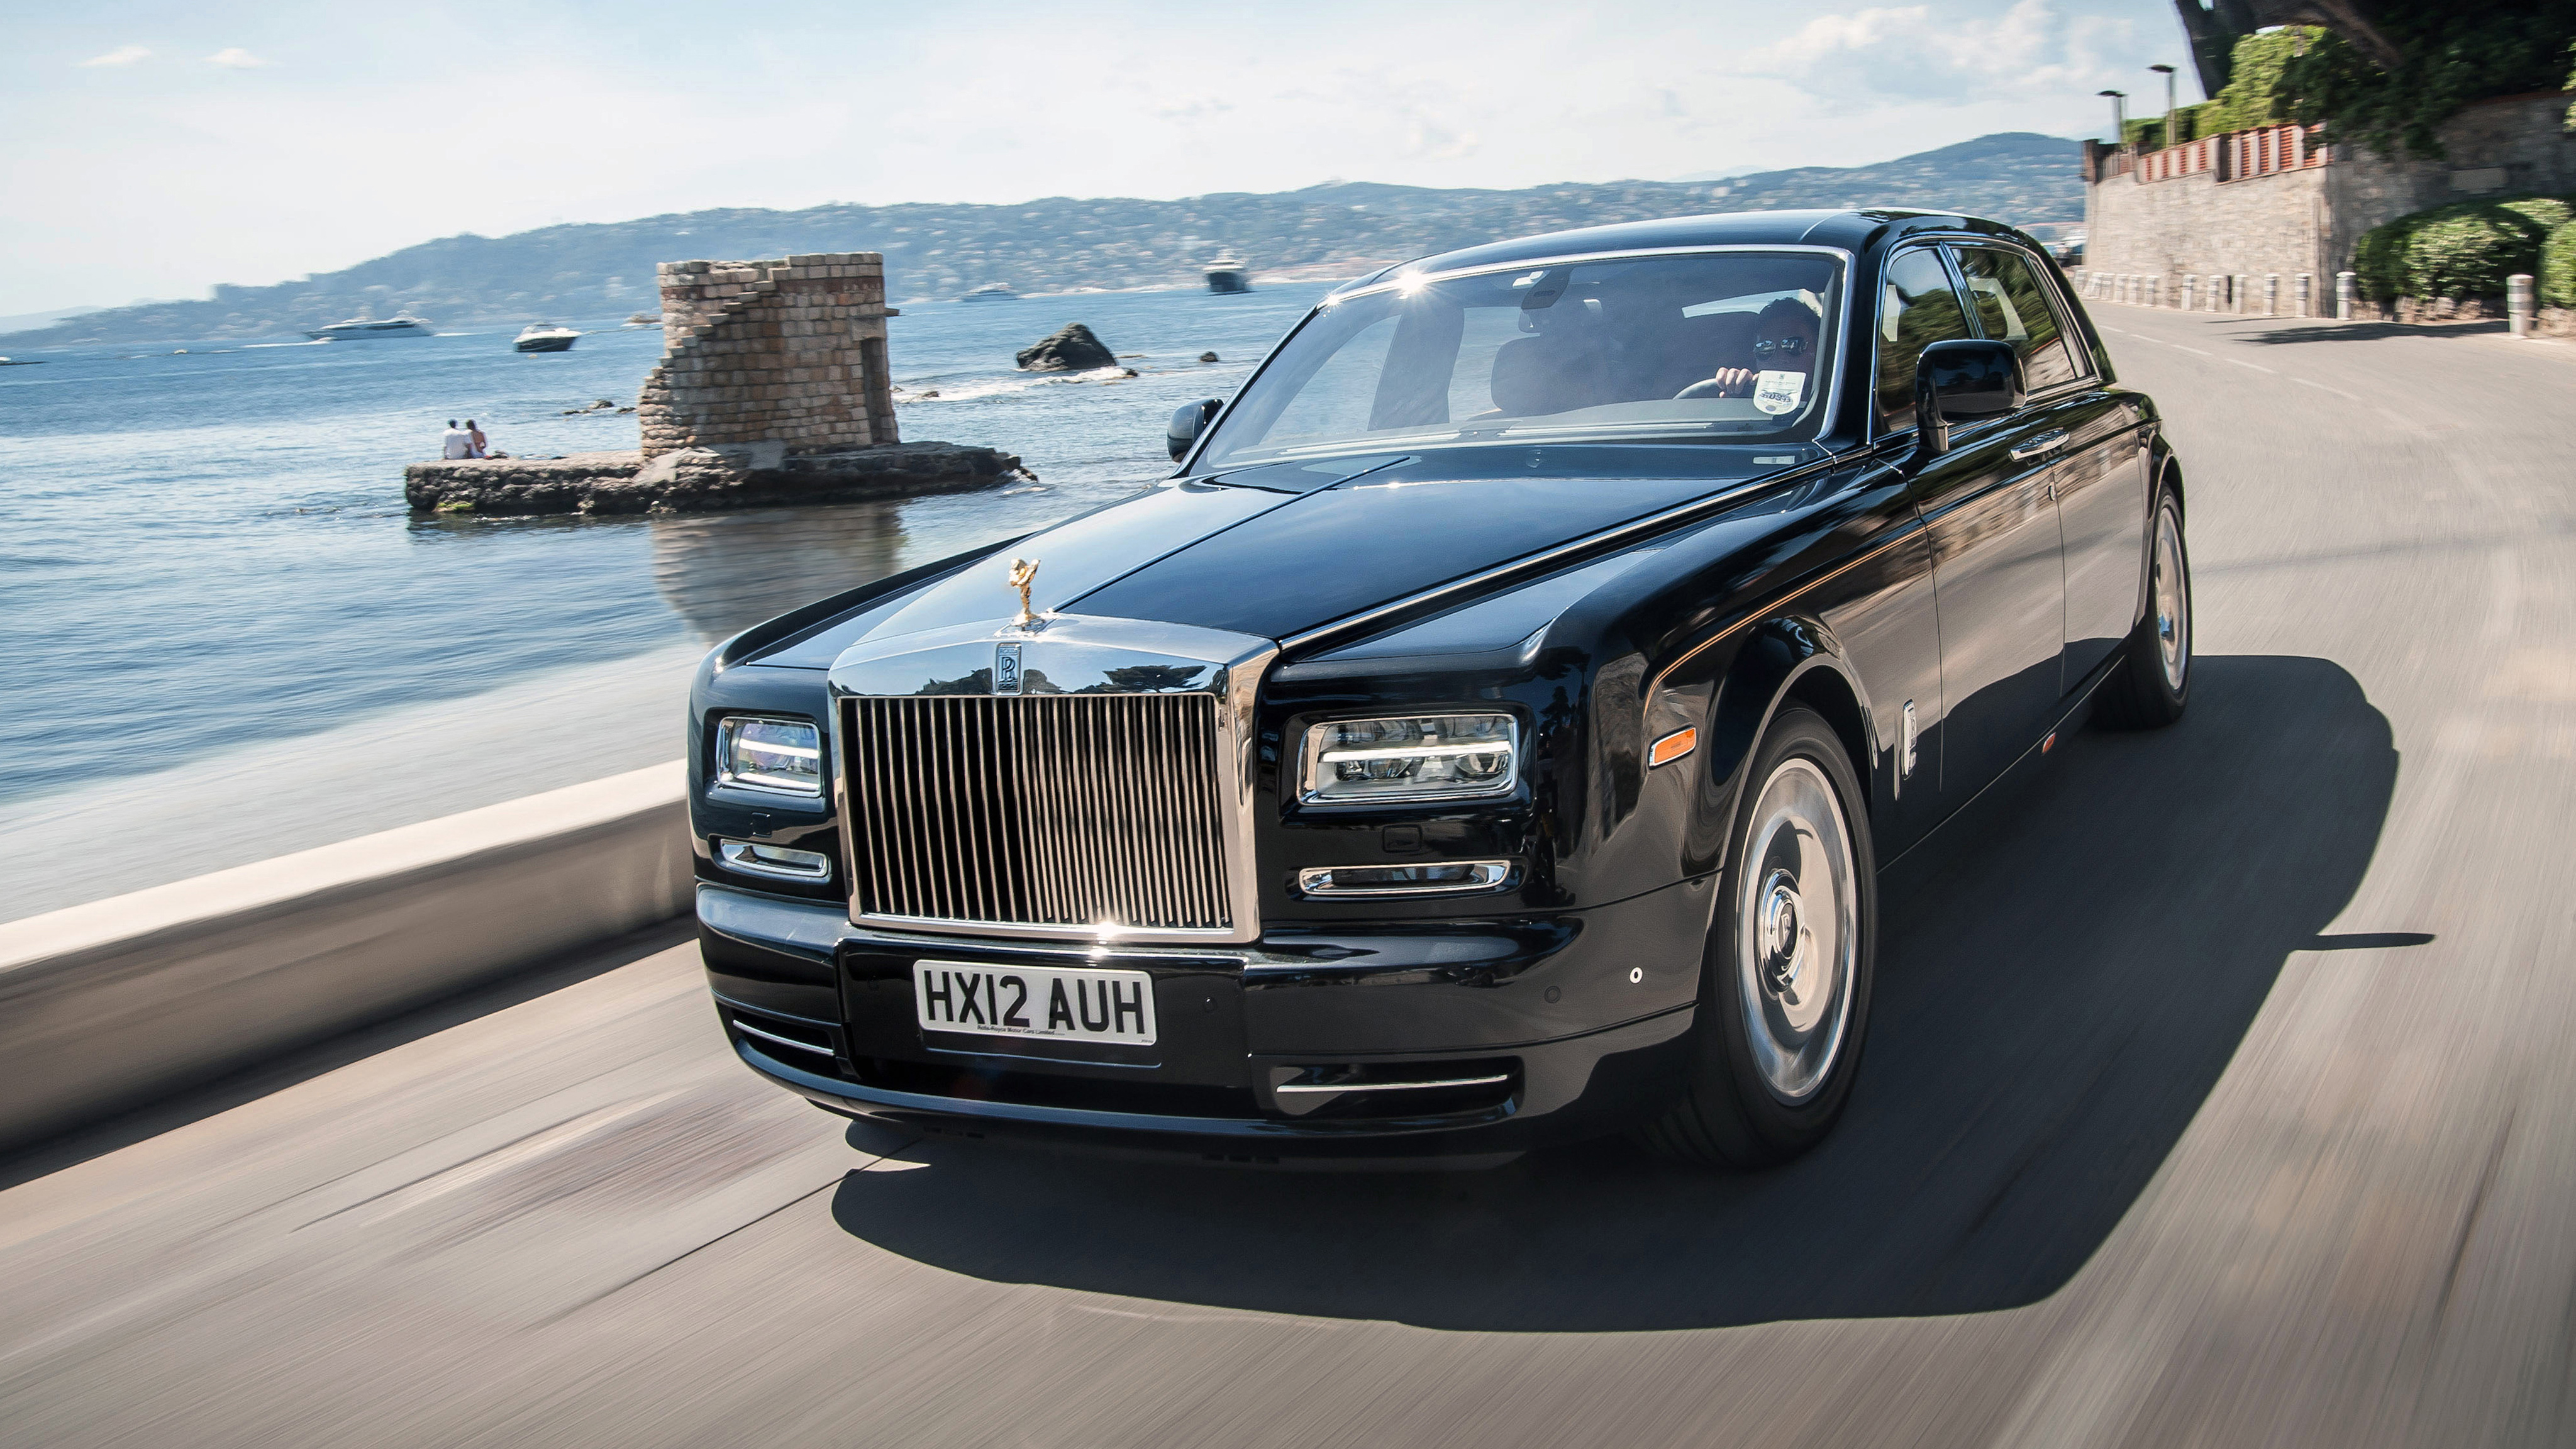 Rolls-Royce Wraith exterior photo